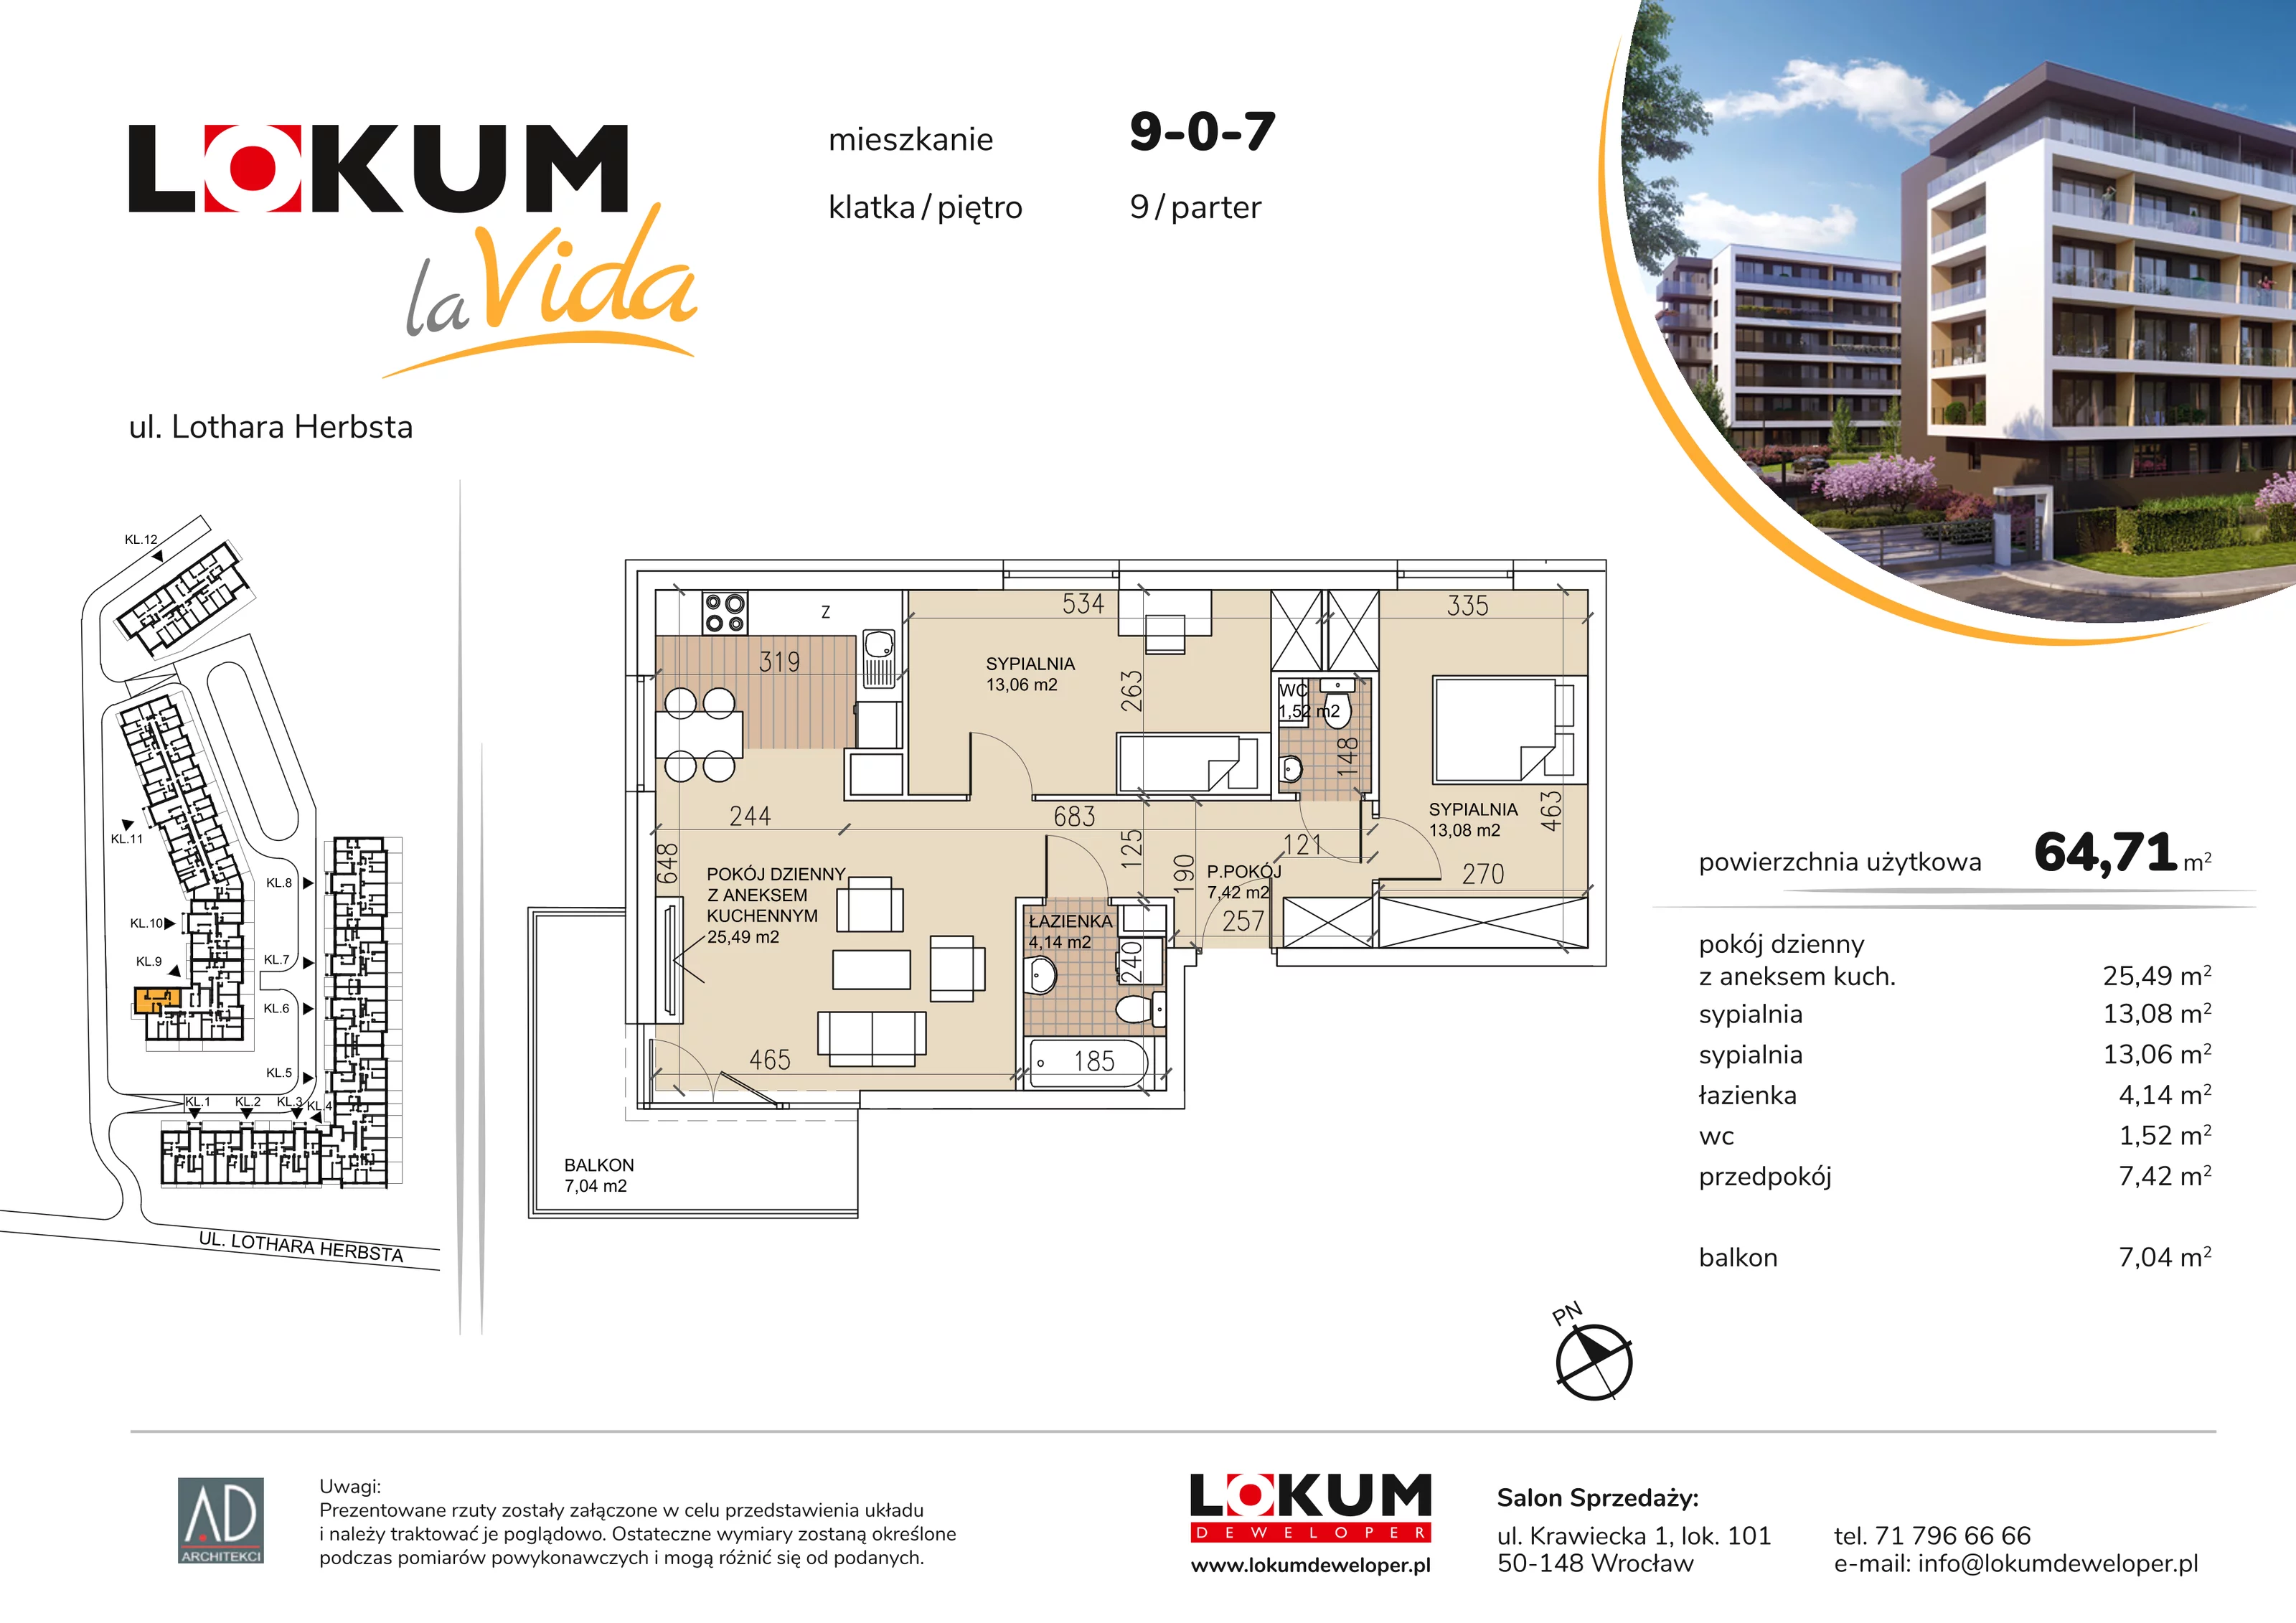 Mieszkanie 64,71 m², parter, oferta nr 9-0-7, Lokum la Vida, Wrocław, Sołtysowice, ul. Lothara Herbsta